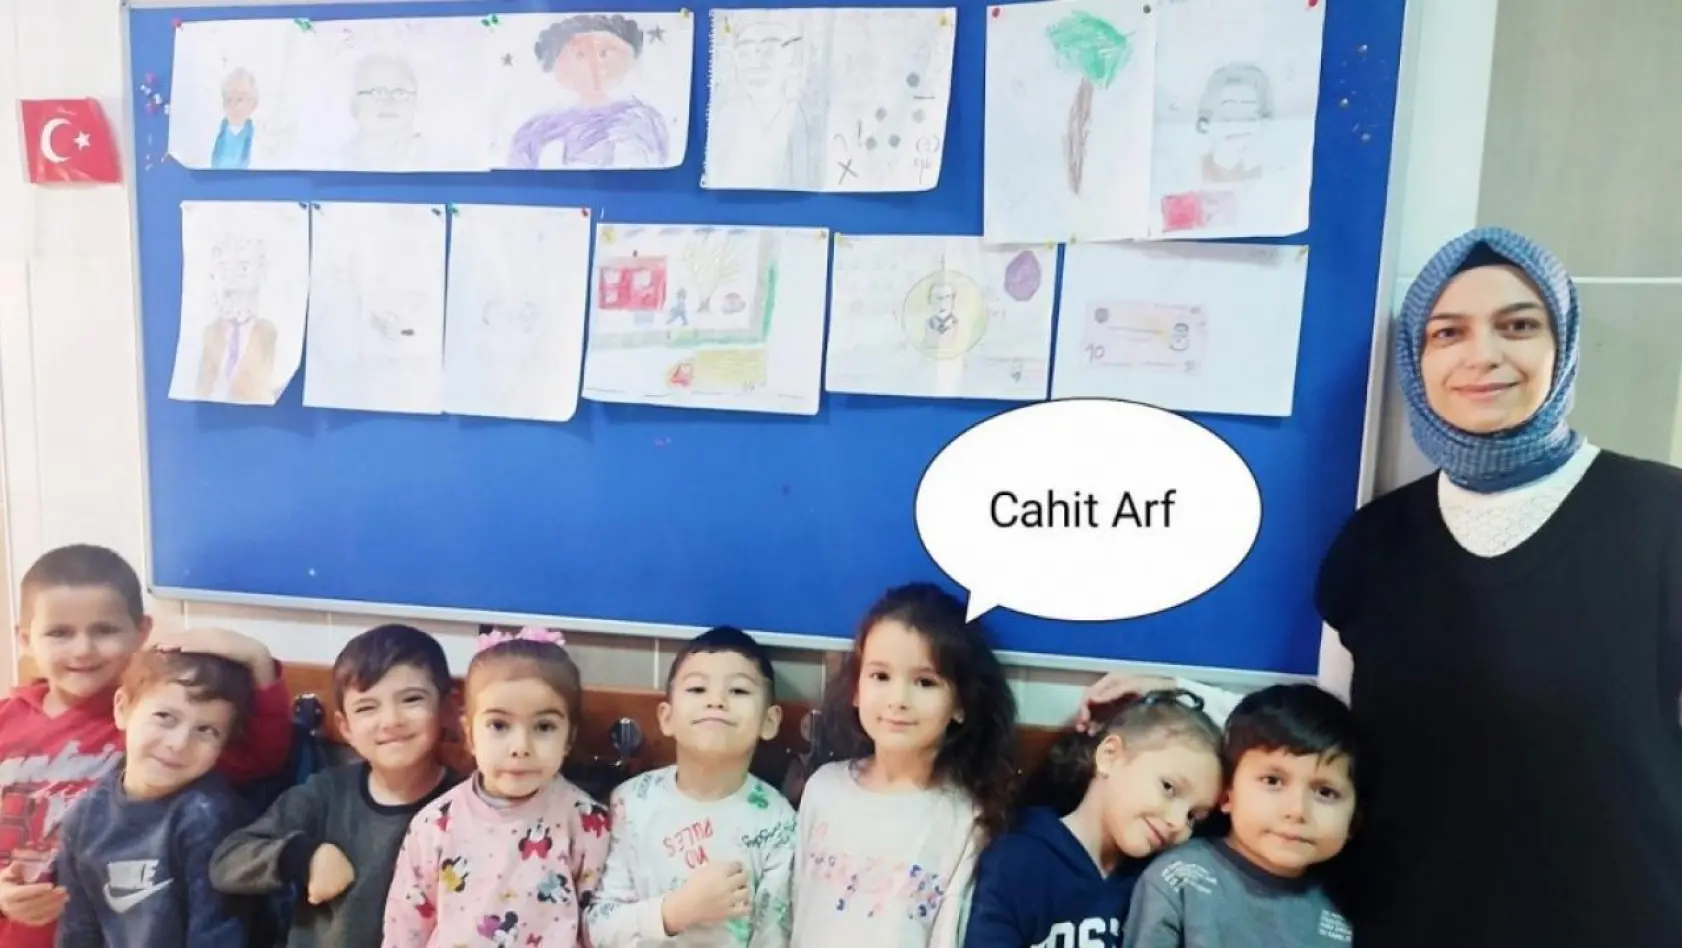 Ana sınıfında matematikçi Cahit Arf'ın resmini çizme yarışması